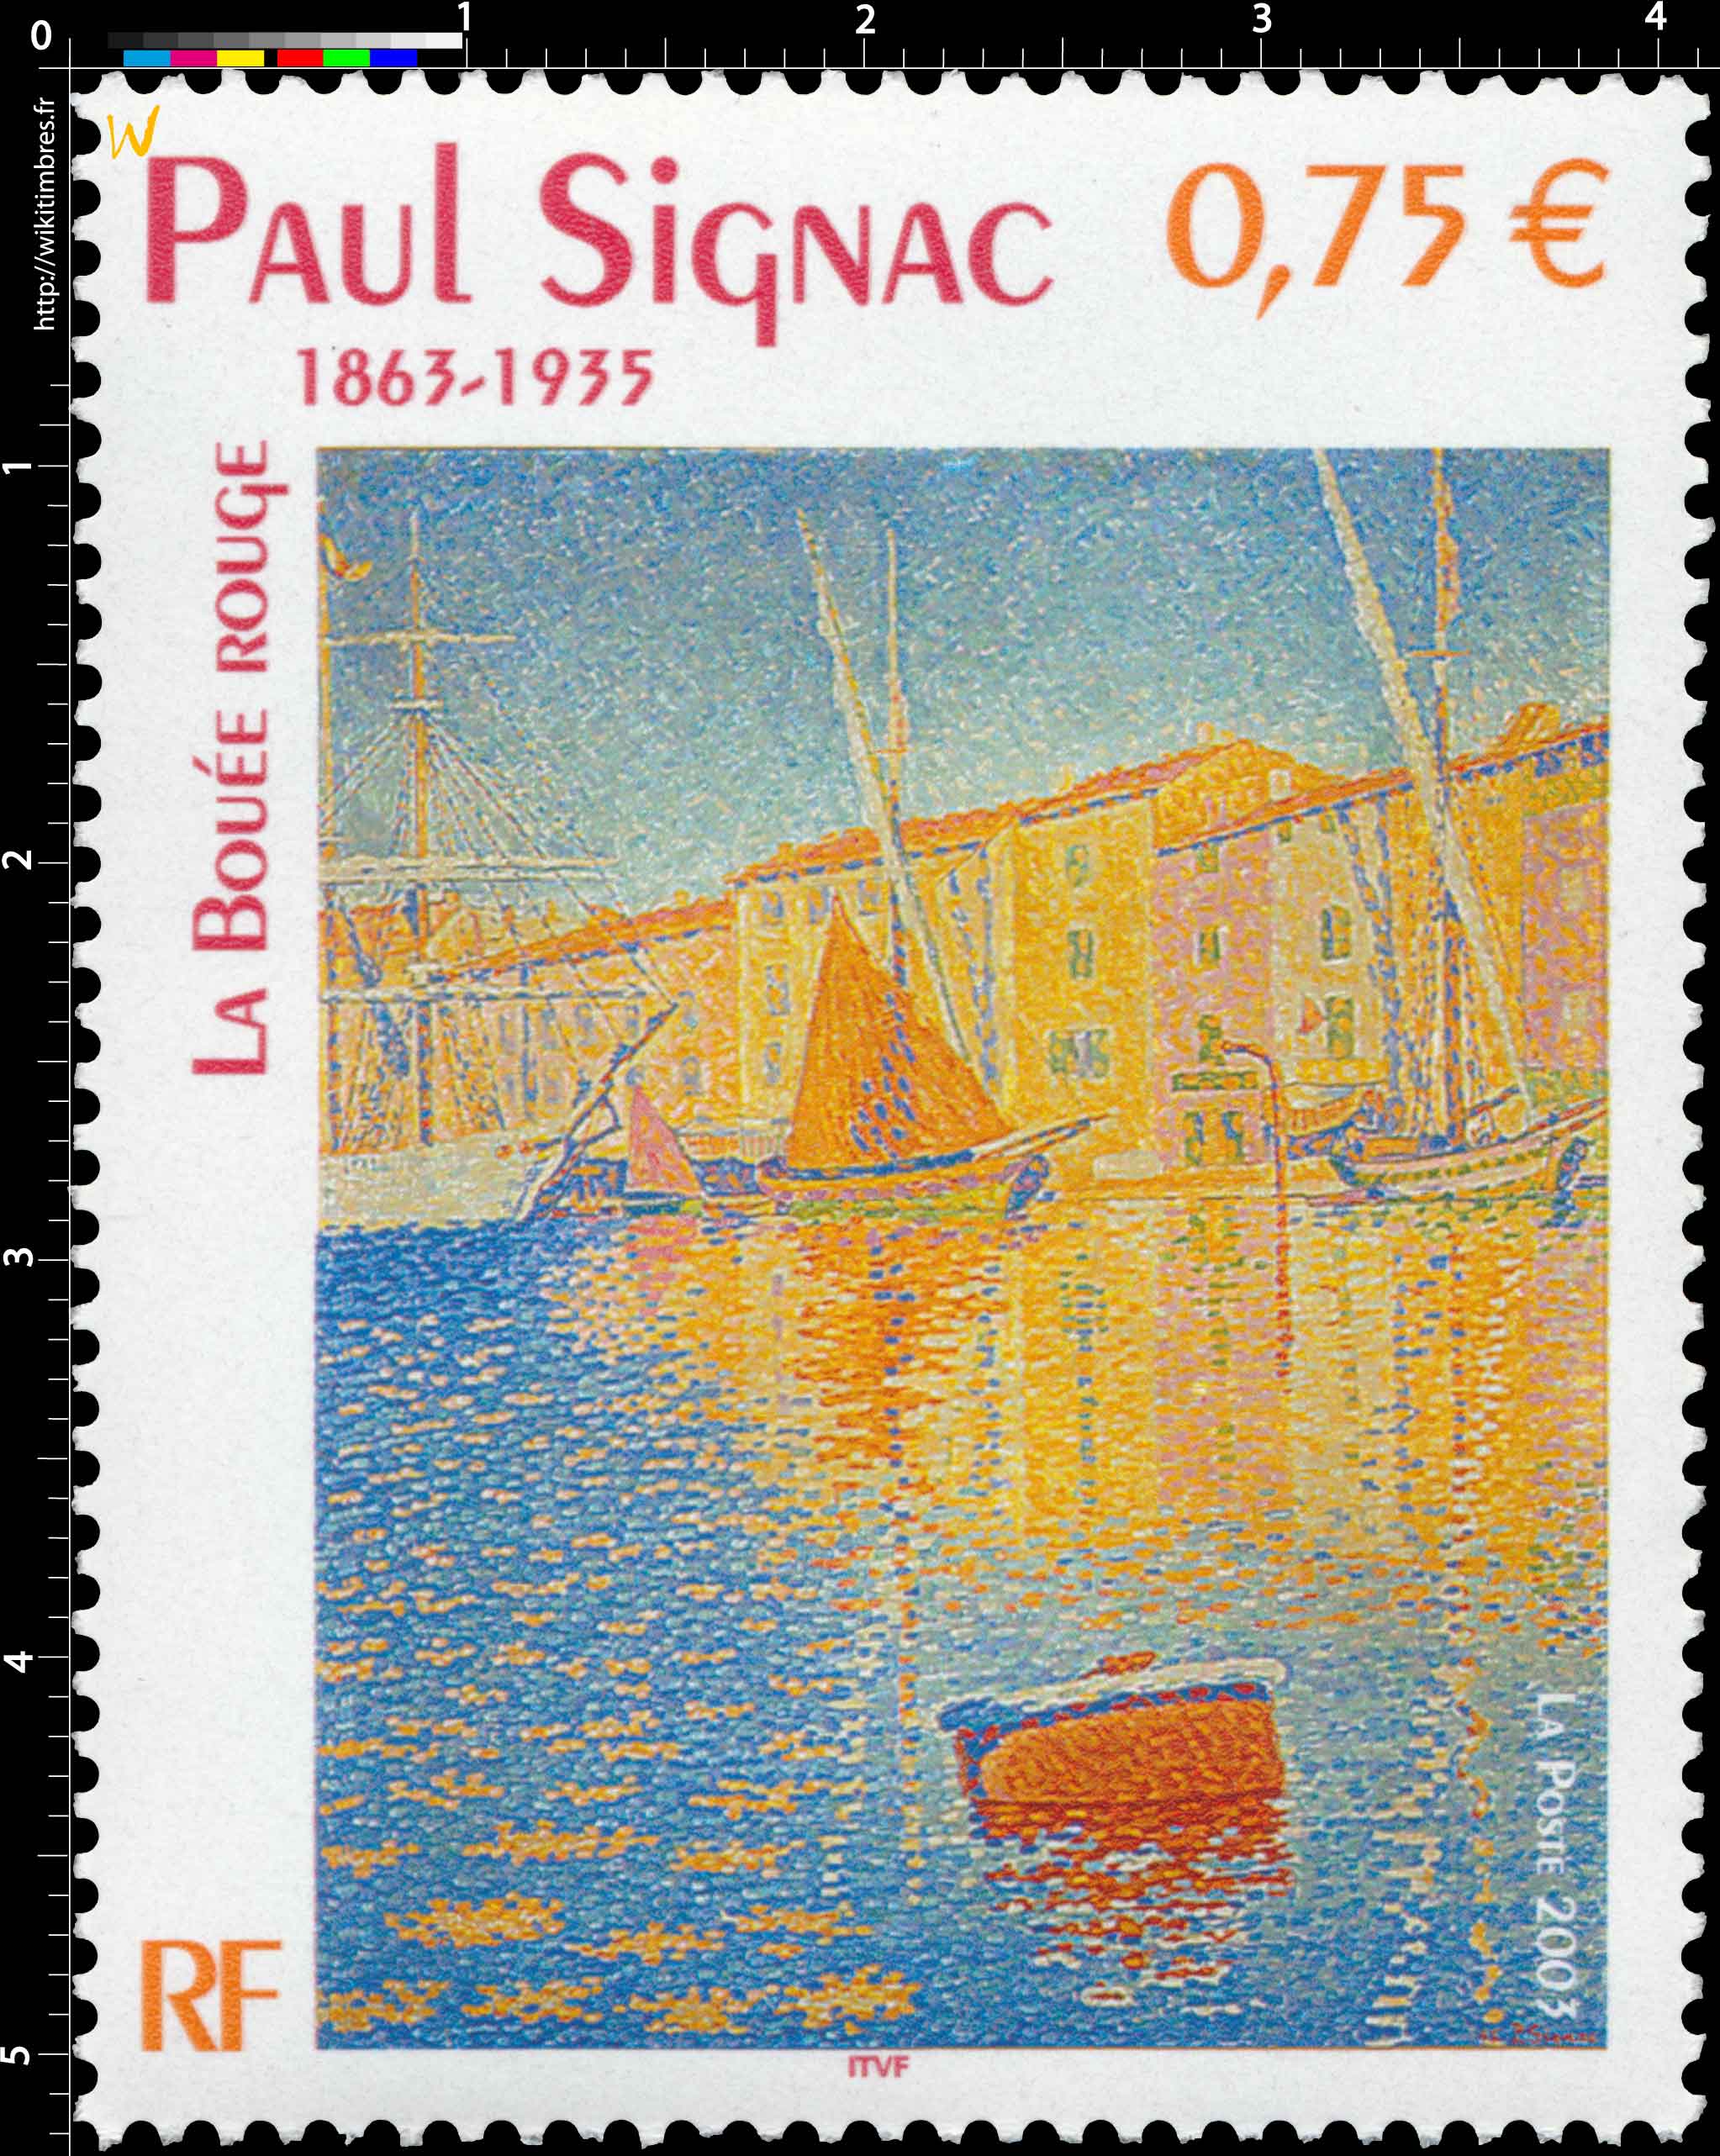 2003 PAUL SIGNAC 1863-1935 LA BOUÉE ROUGE